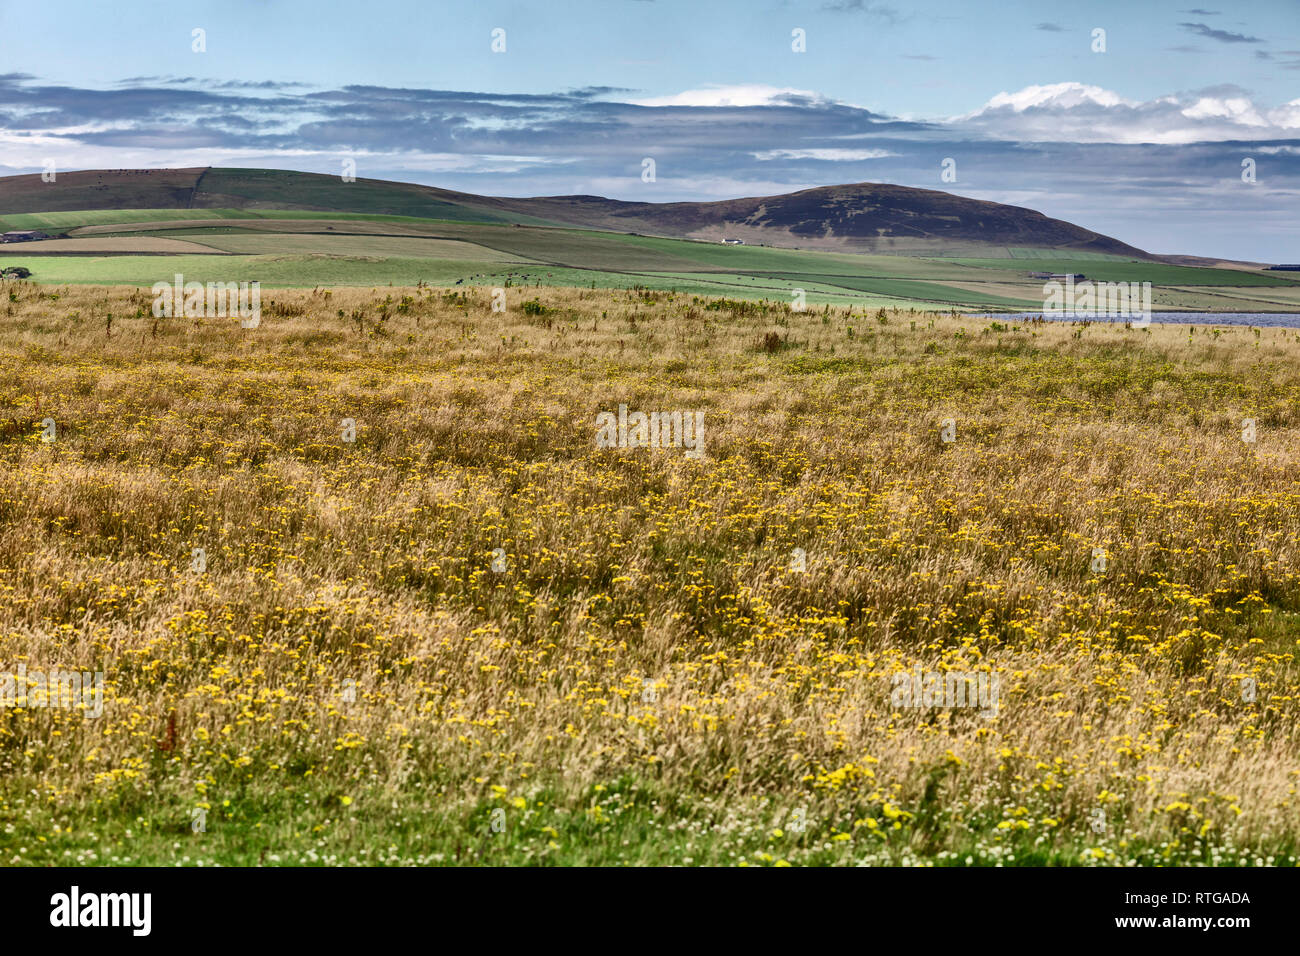 Mainland, Orkney islands, Scotland, UK Stock Photo